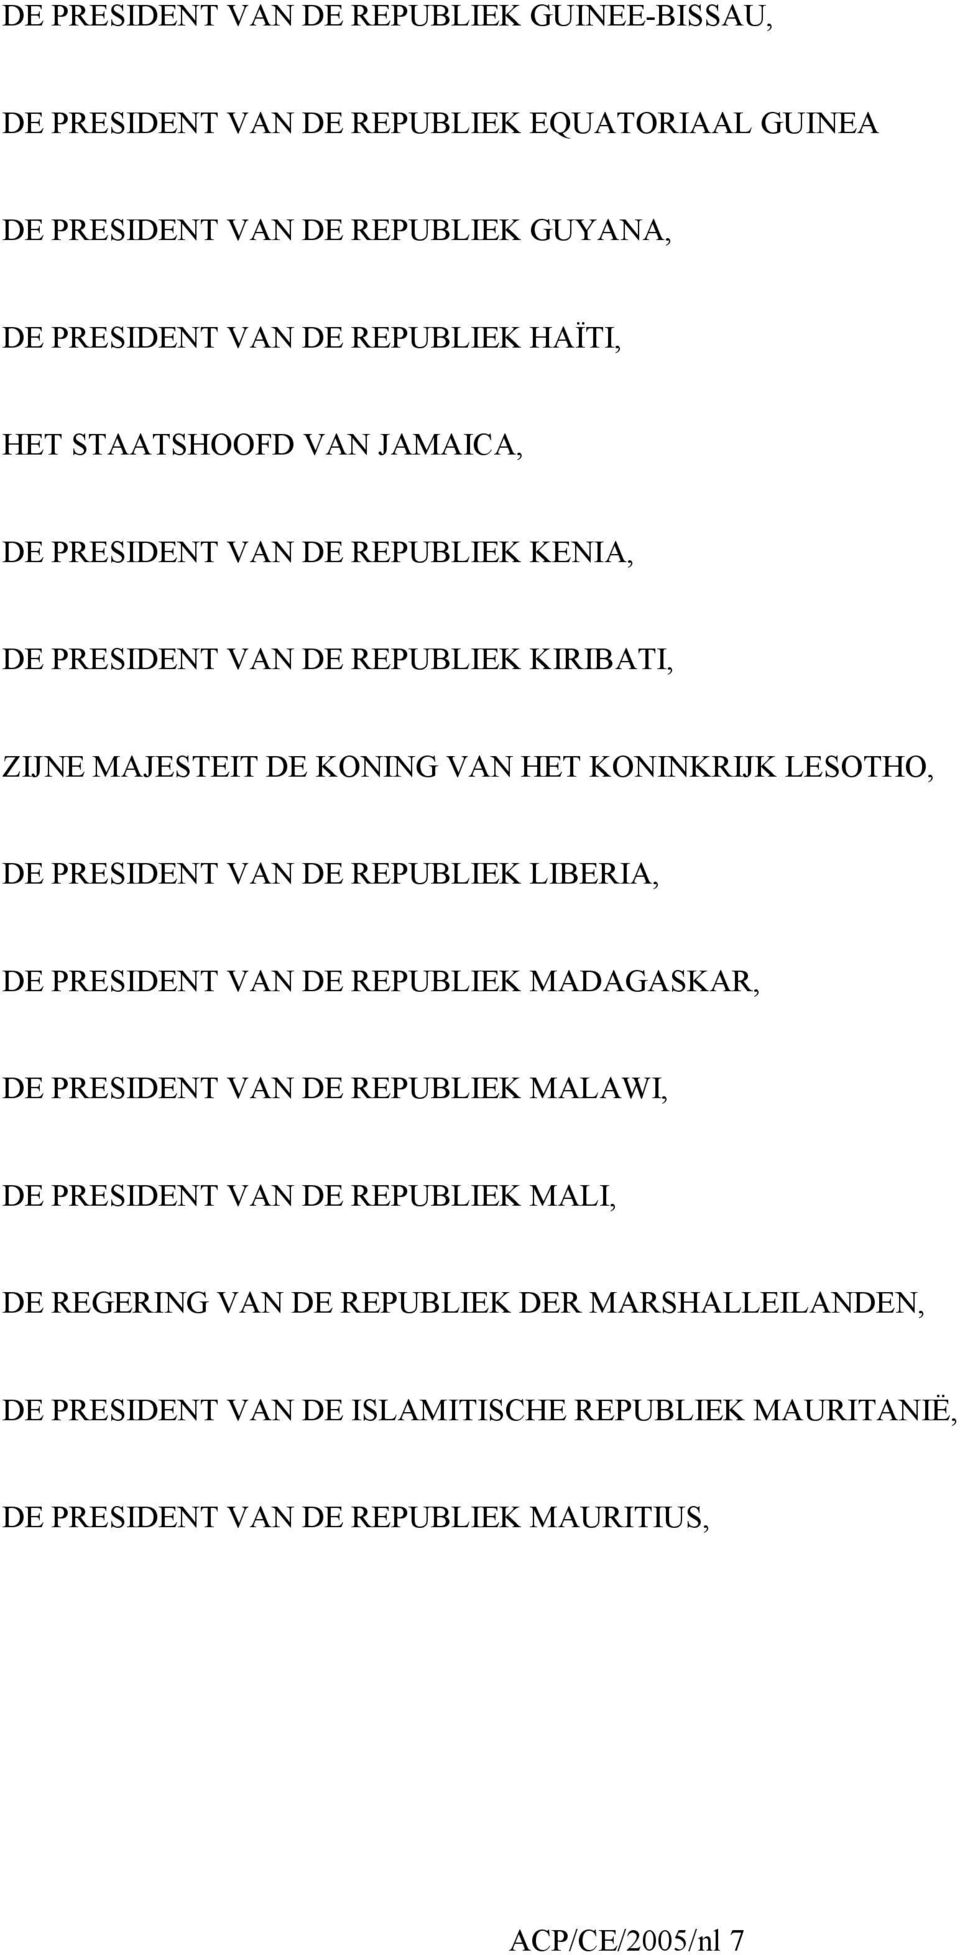 LESOTHO, DE PRESIDENT VAN DE REPUBLIEK LIBERIA, DE PRESIDENT VAN DE REPUBLIEK MADAGASKAR, DE PRESIDENT VAN DE REPUBLIEK MALAWI, DE PRESIDENT VAN DE REPUBLIEK